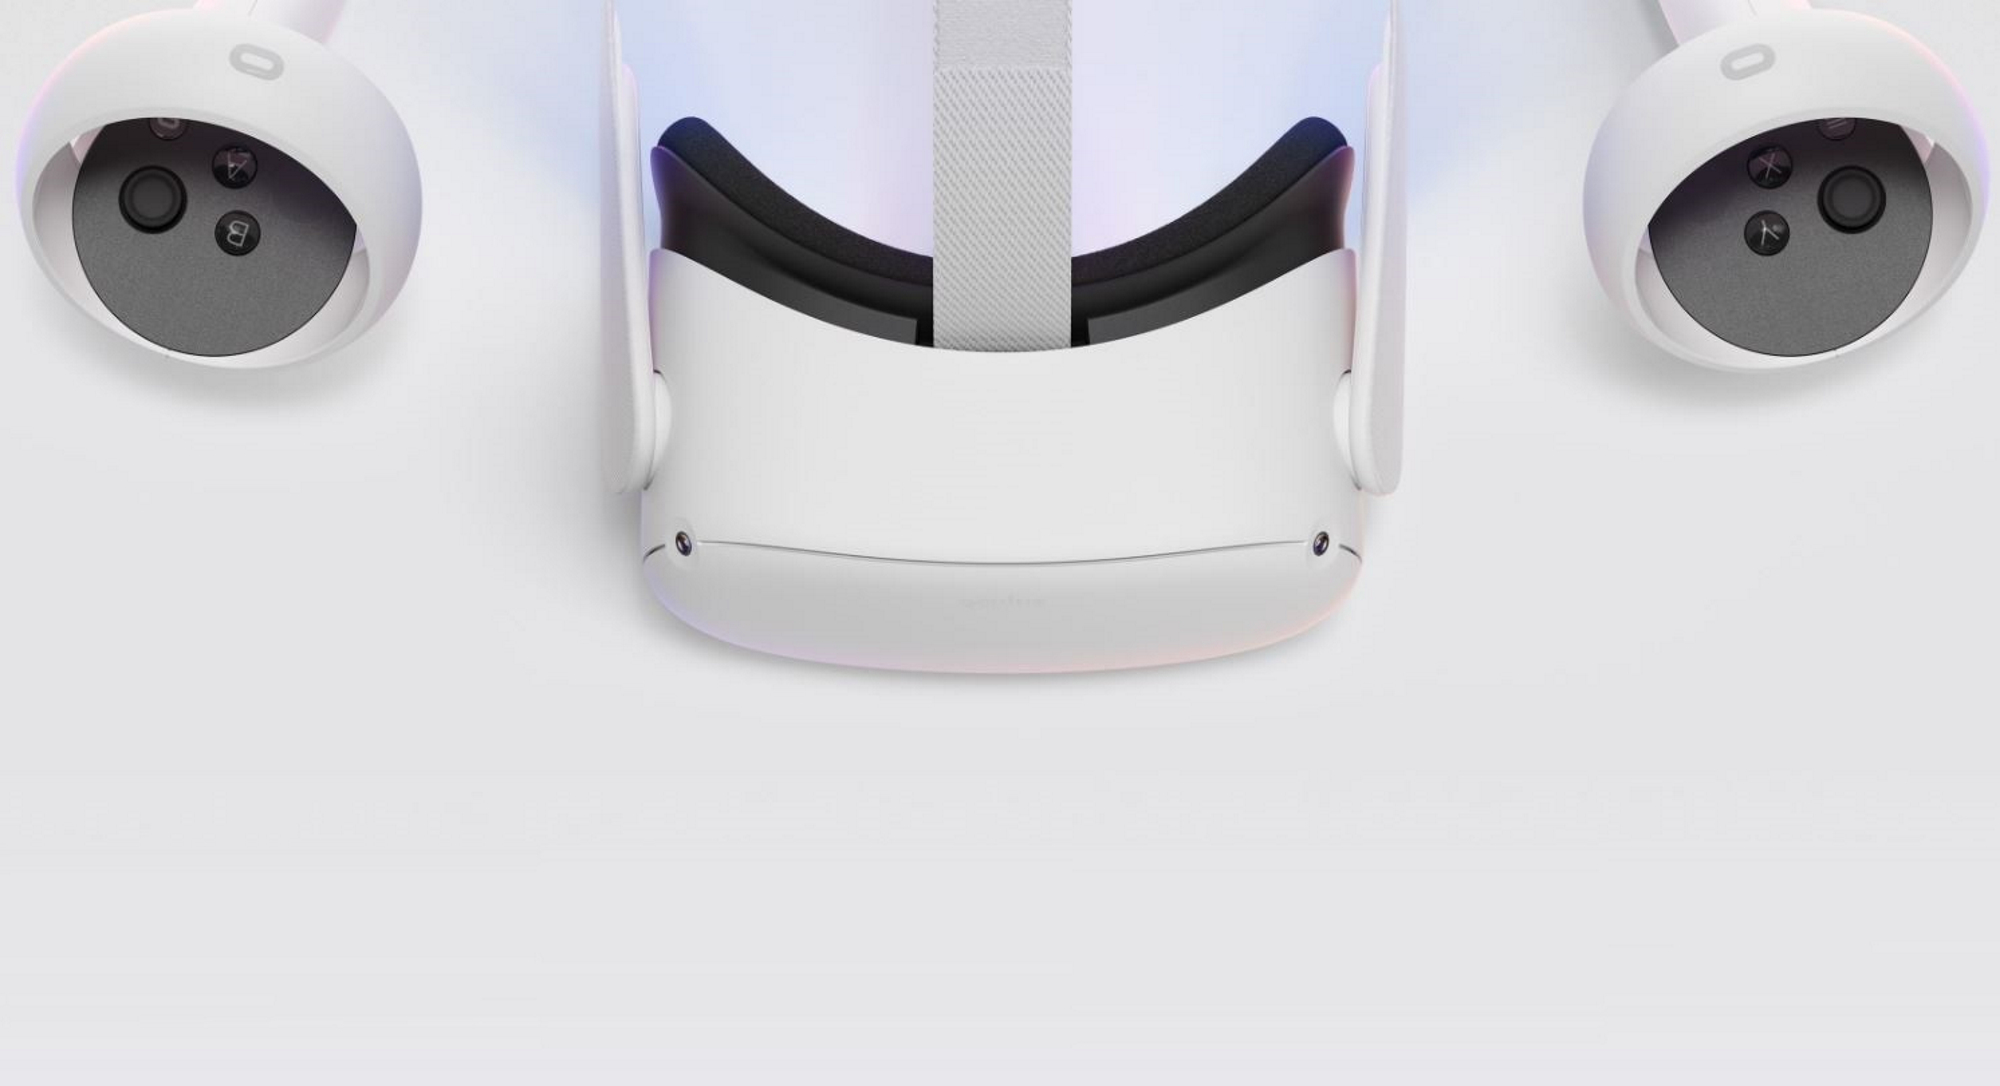 Utvecklare backar kring Oculus VR-reklam efter kritik